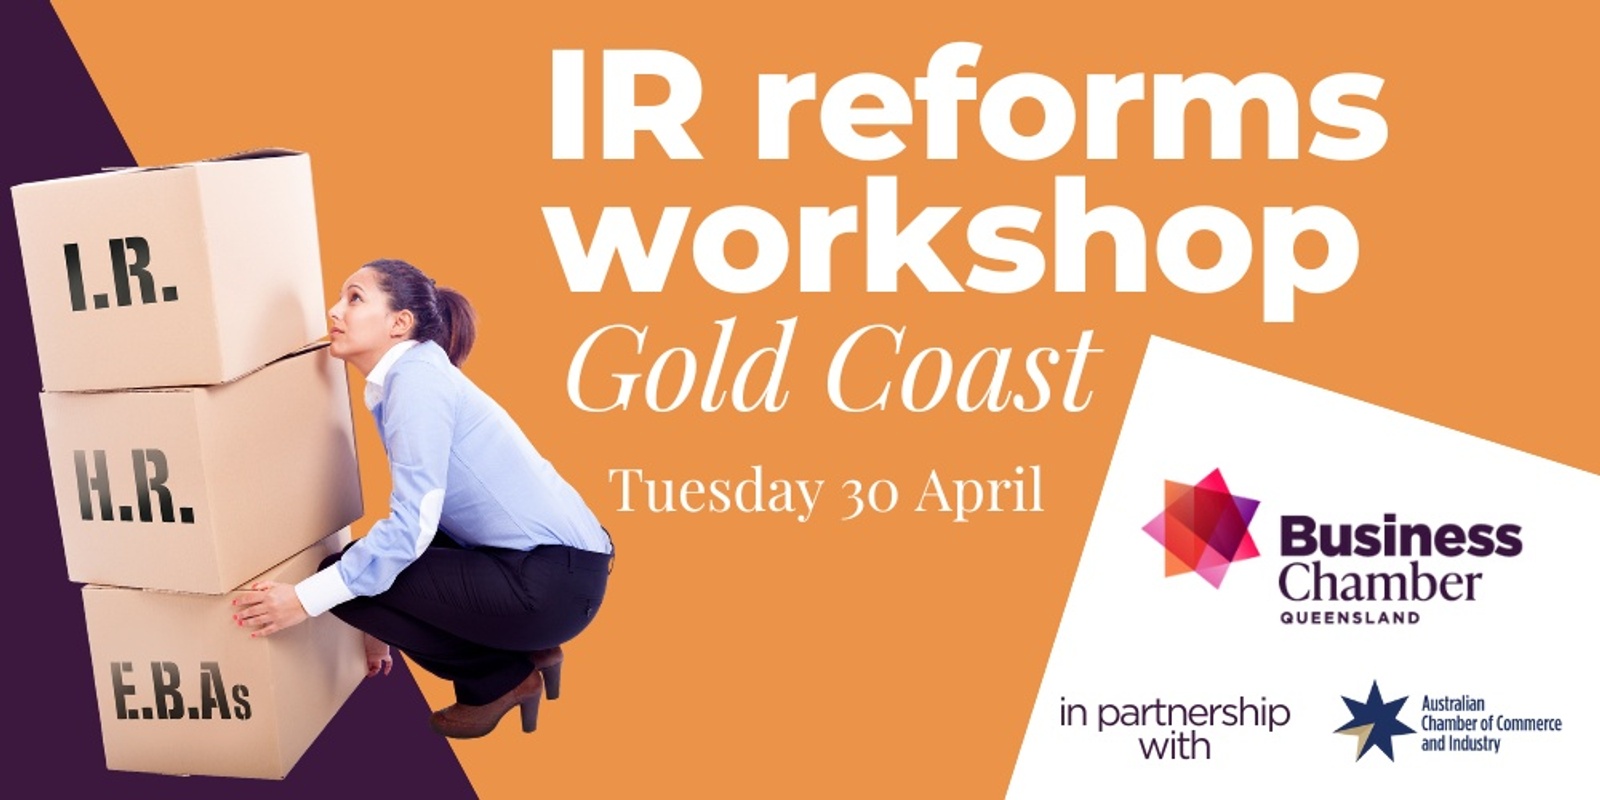 Banner image for IR reforms workshop, Gold Coast